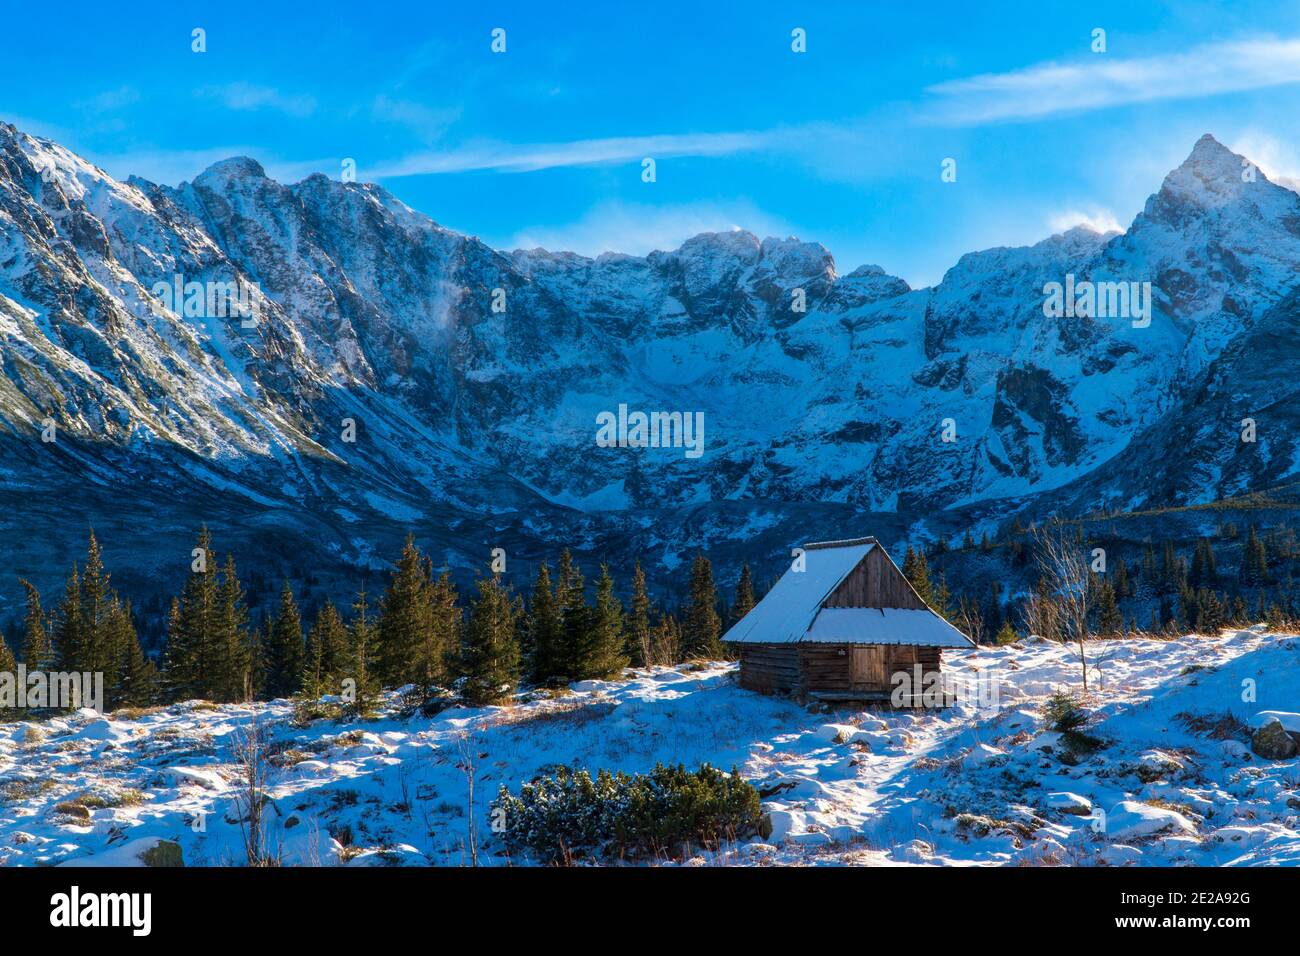 Belle vue panoramique sur les montagnes enneigées dans le parc national de tatras avec maison, zakopane pologne. Pendant un hiver froid matin montagne WO Banque D'Images